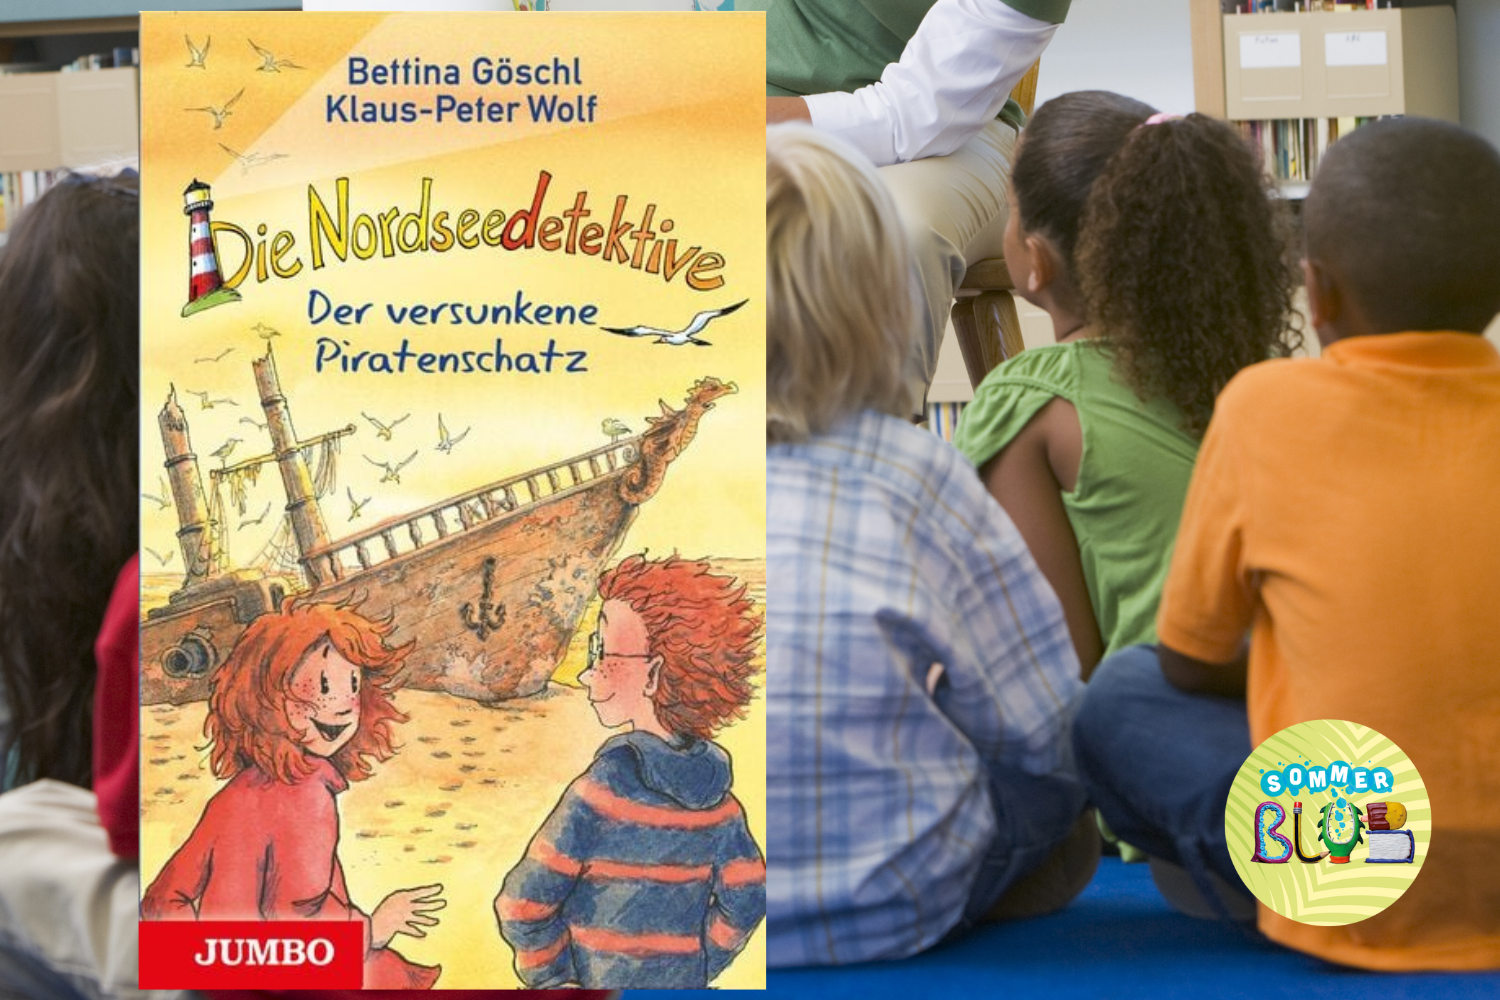 Children listen to a reading